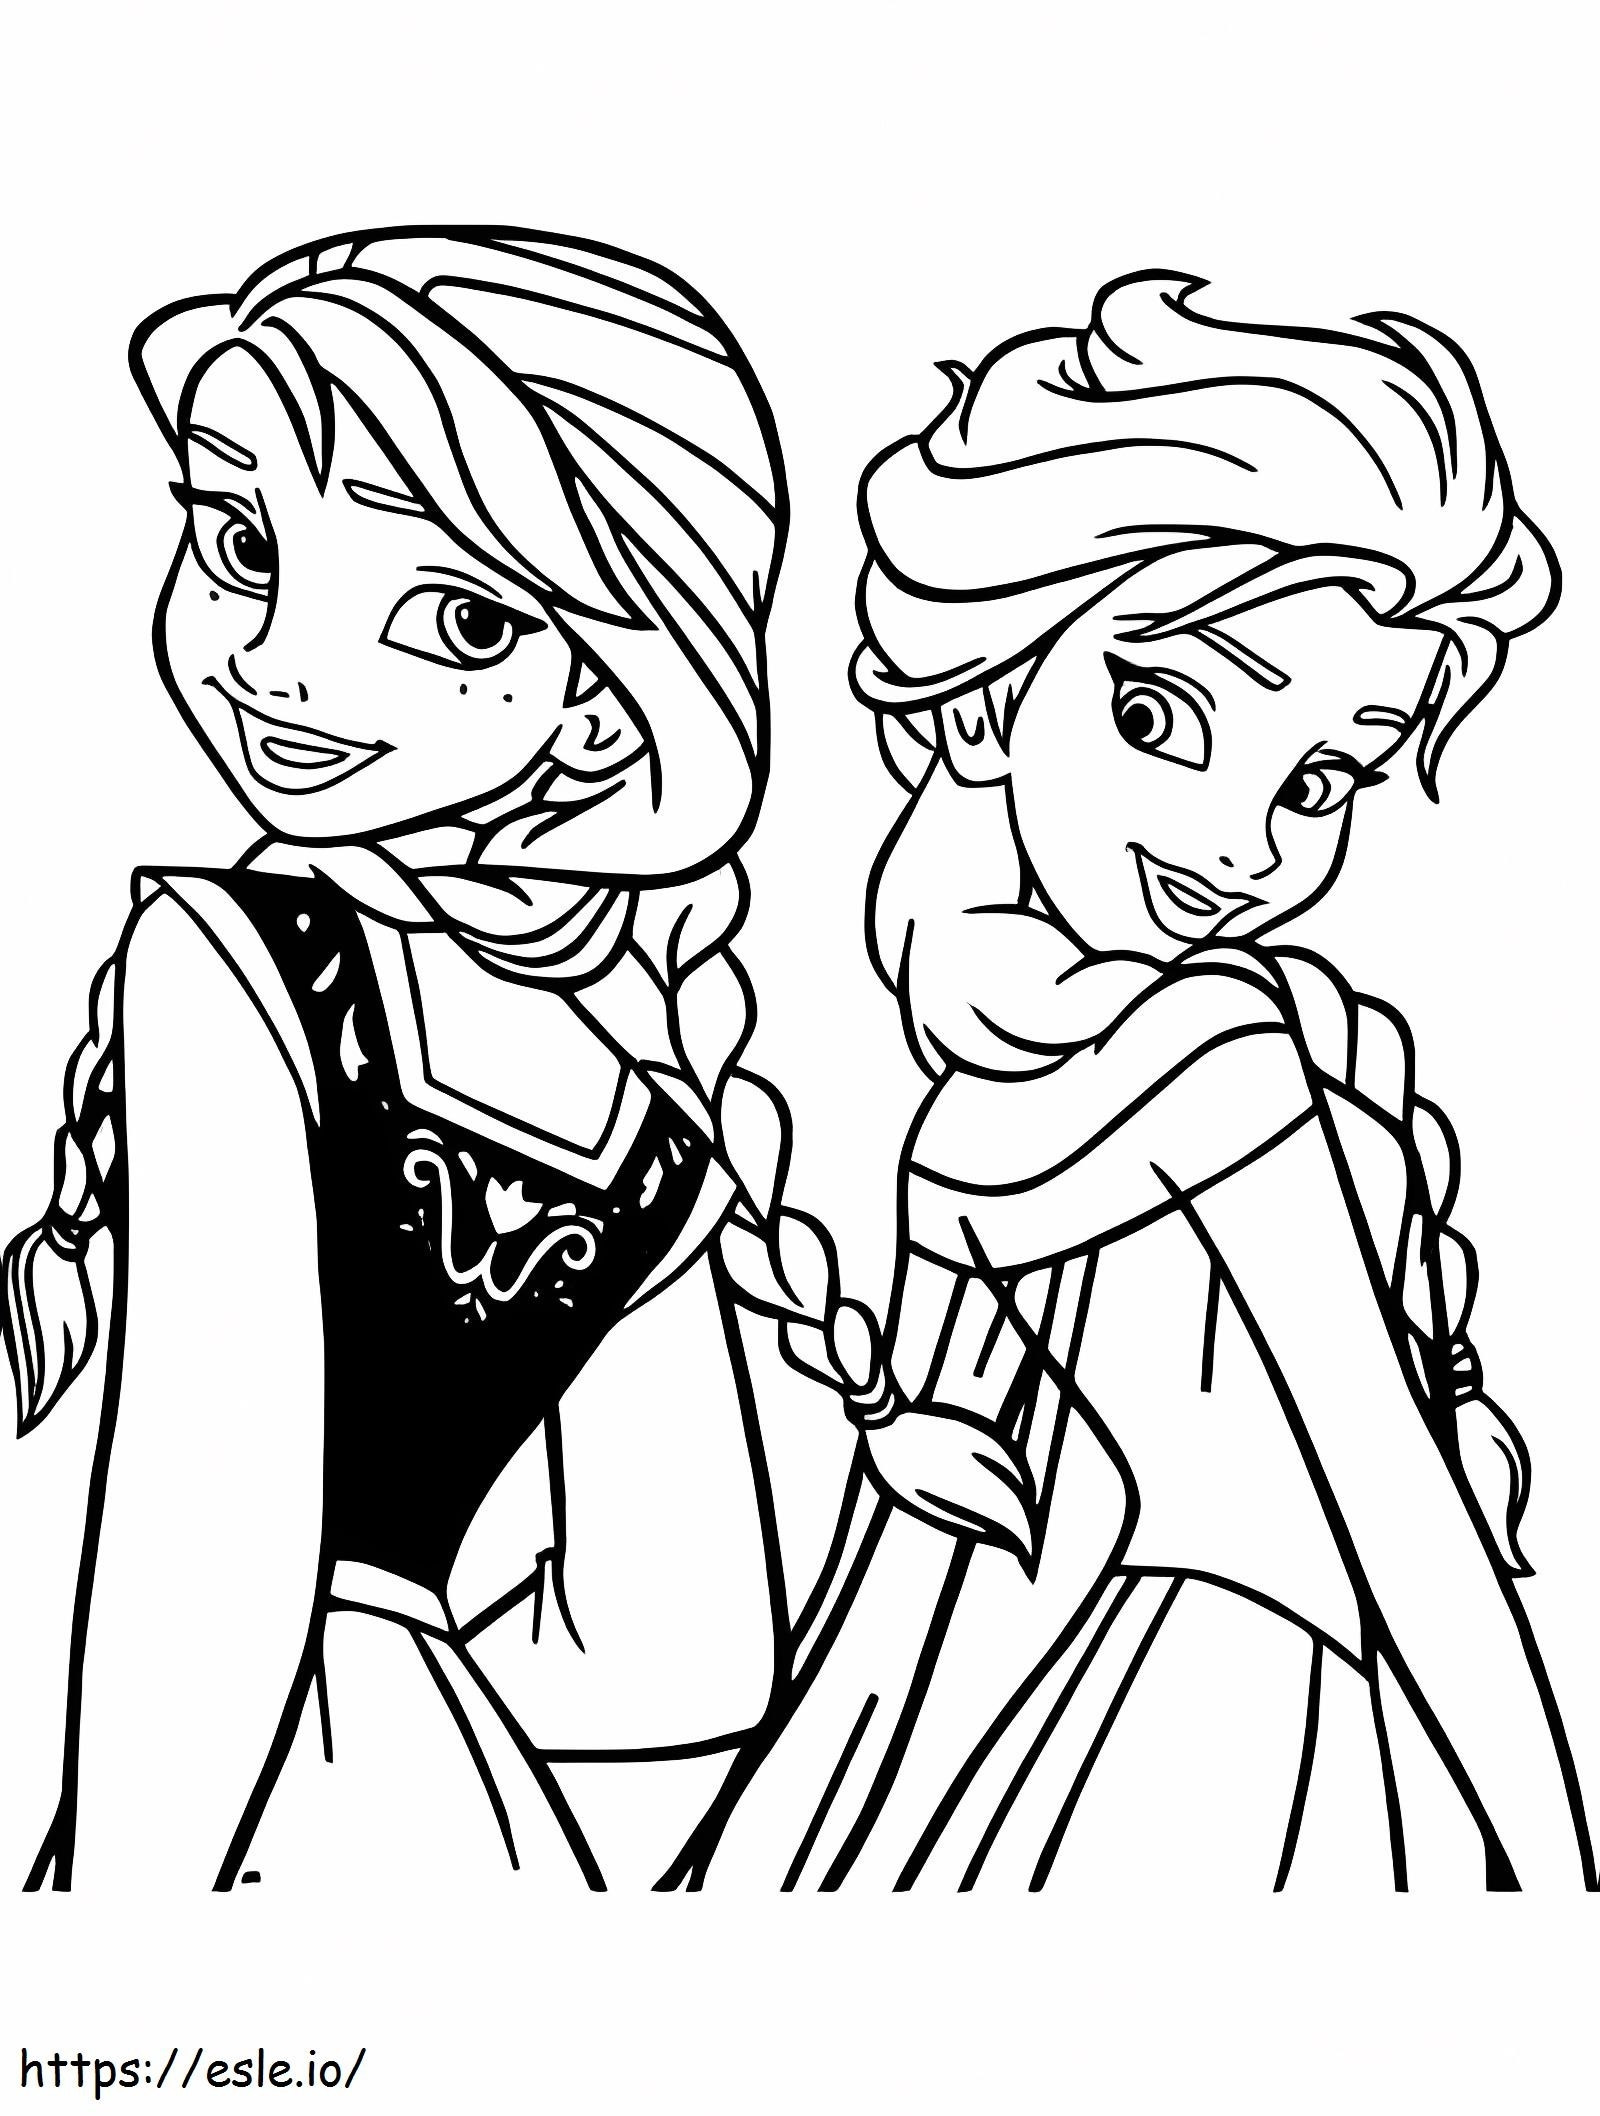 Elsa und Anna in Disney ausmalbilder